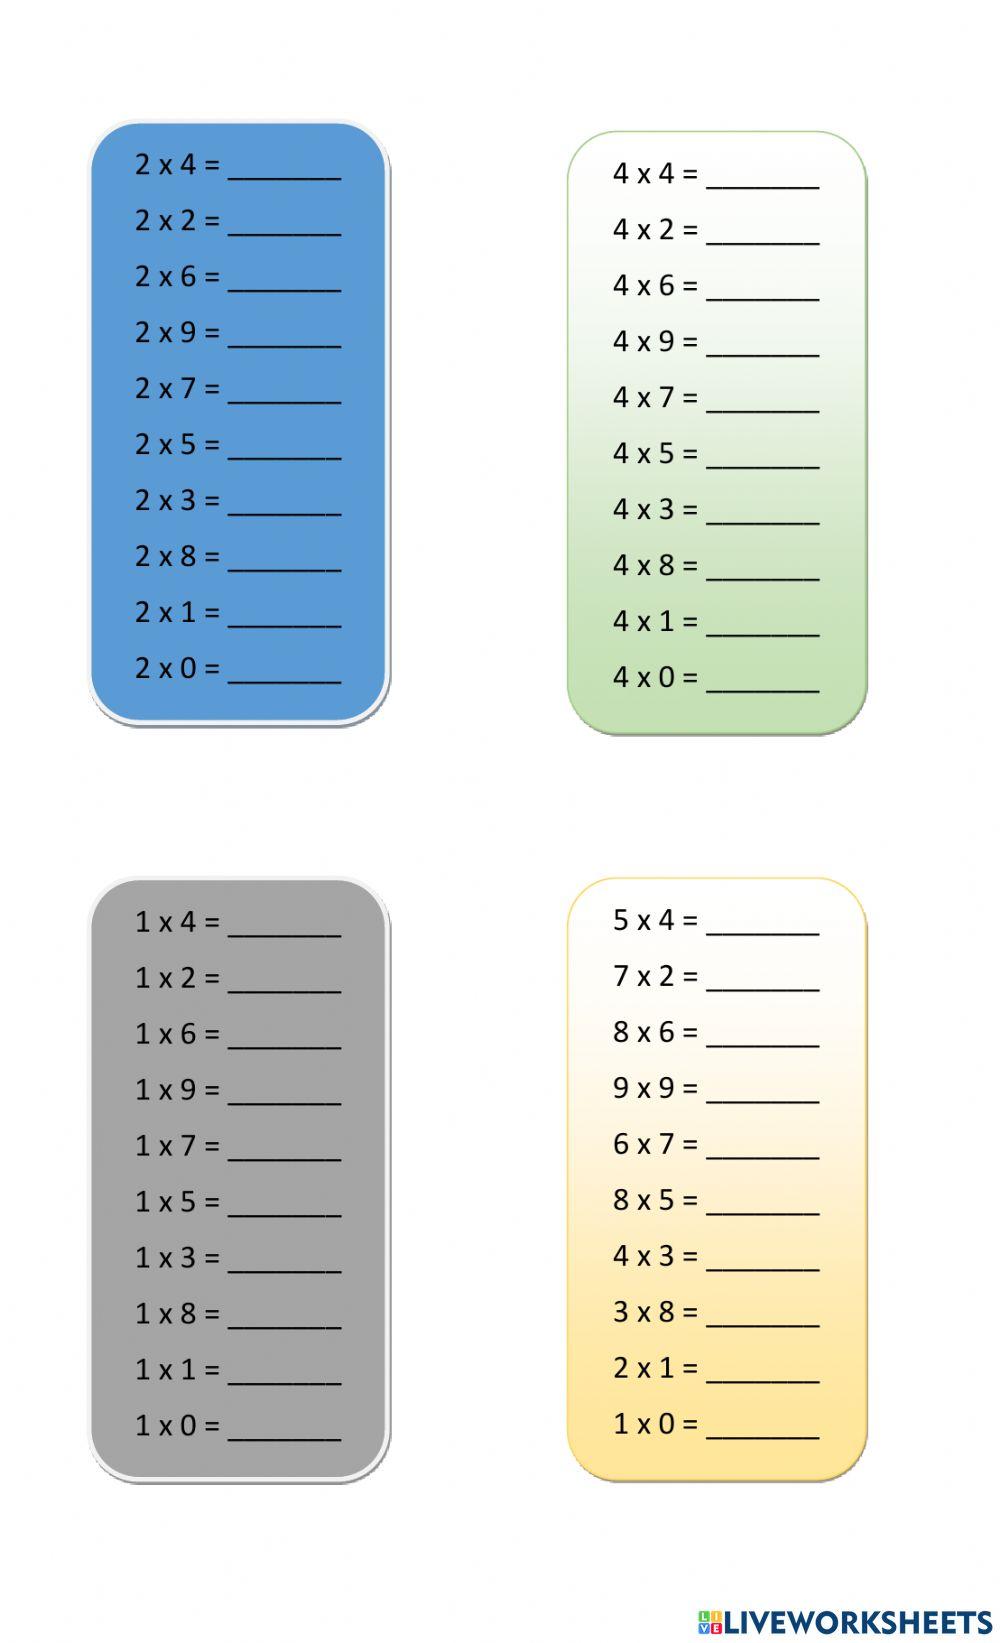 Ejercicios tablas de multiplicar